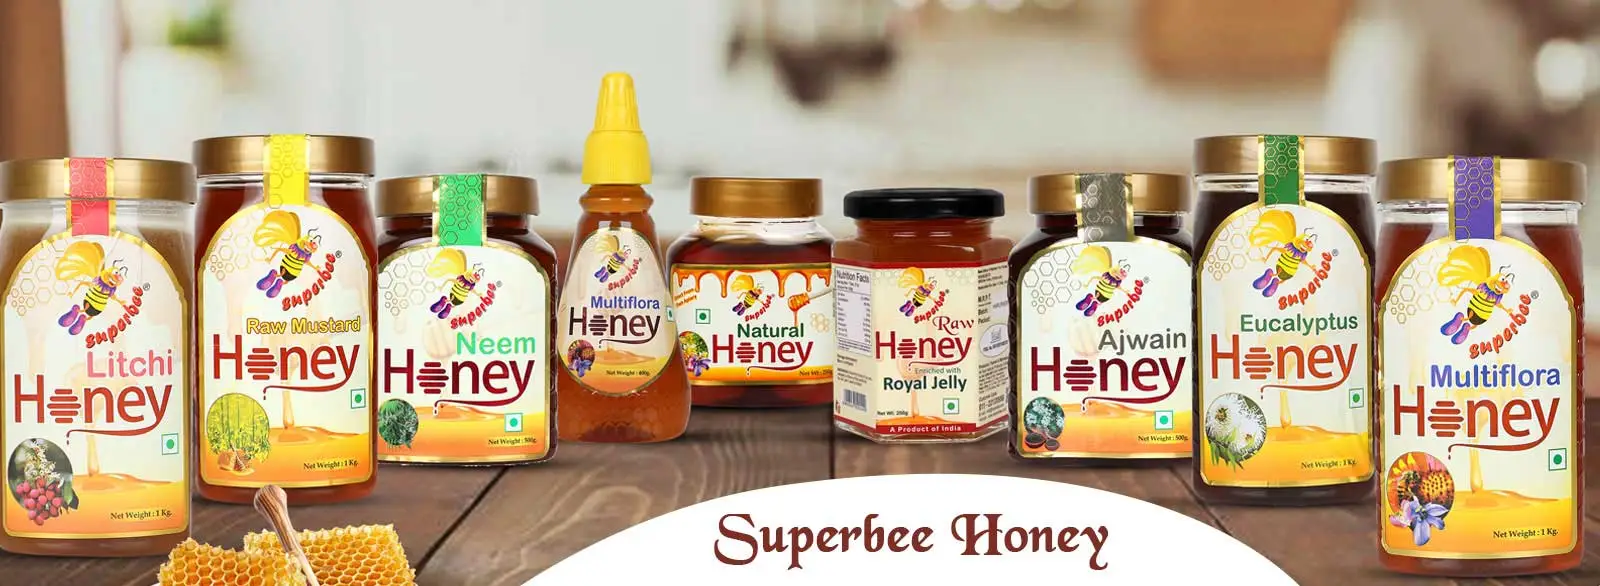 Superbee Honey Suppliers in Delhi